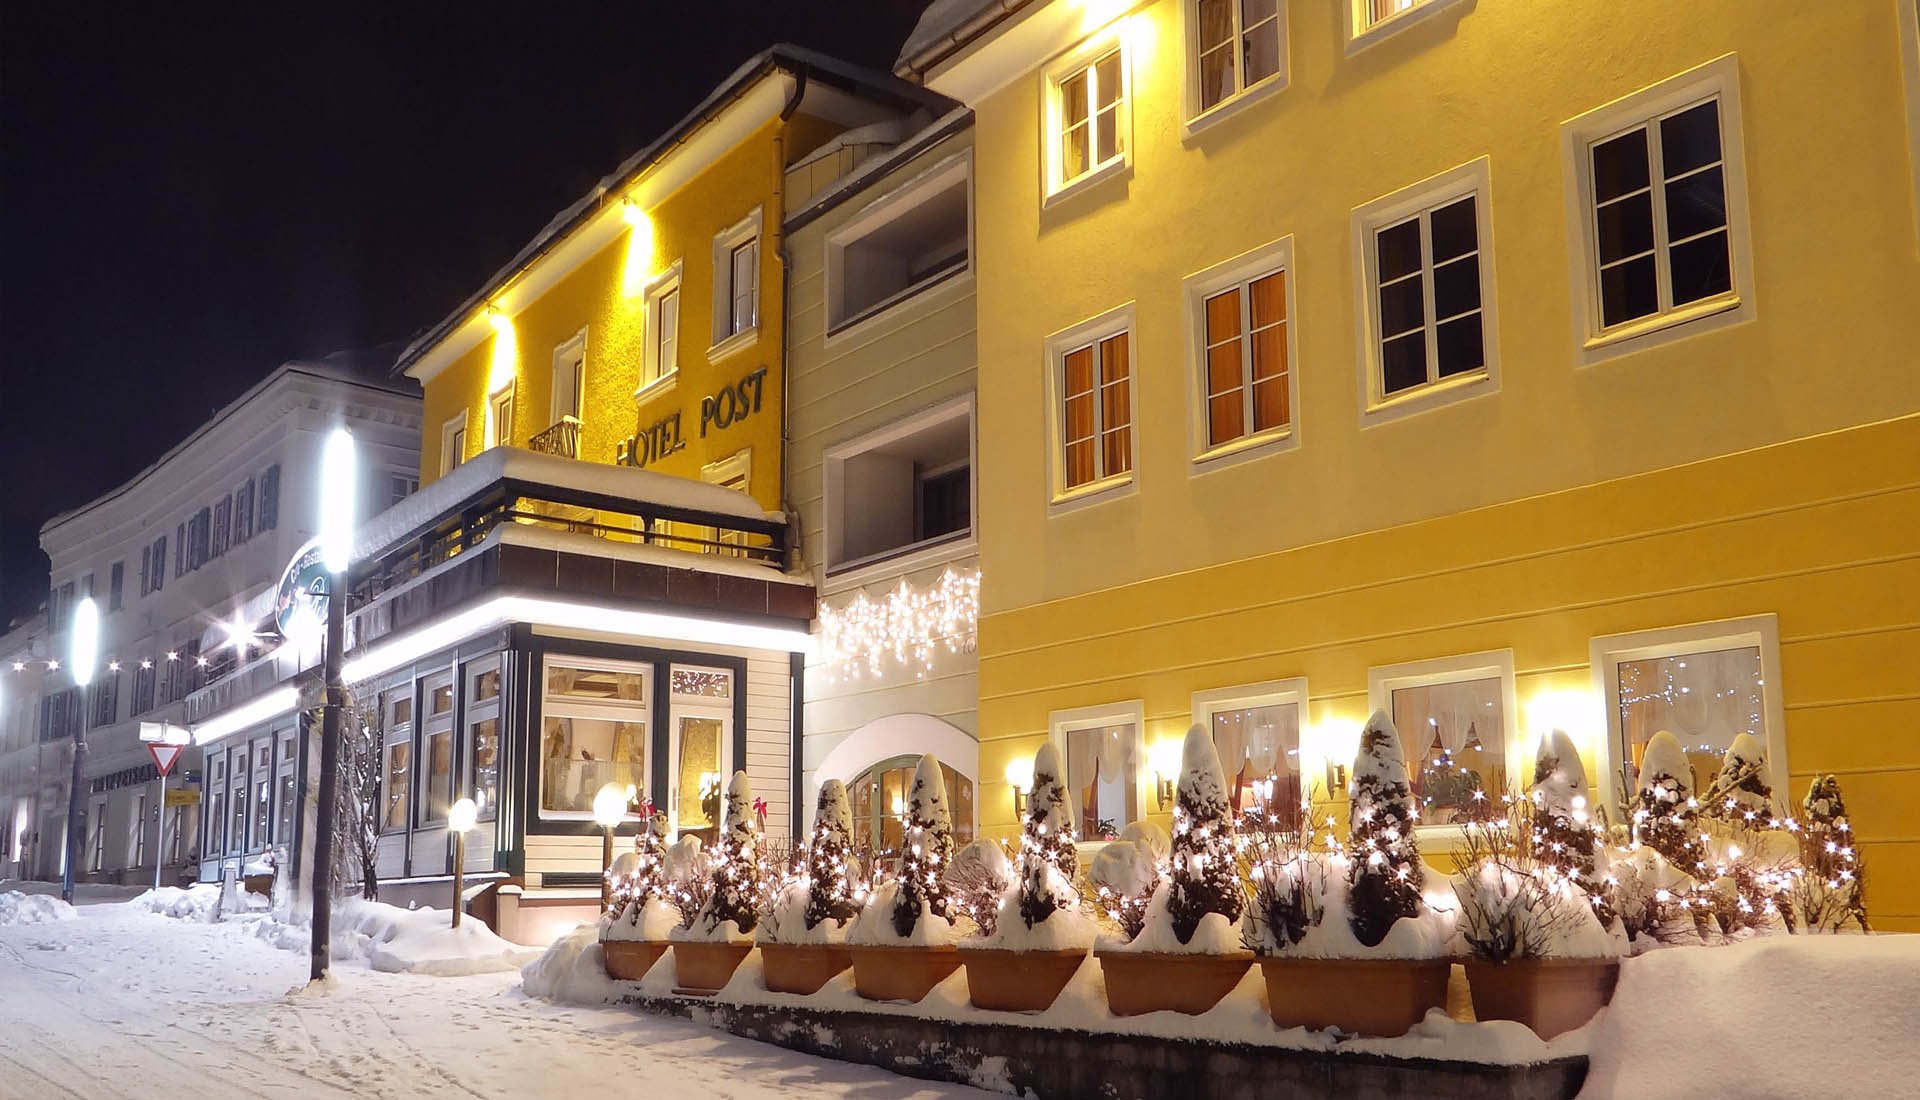 3 Tage Radstädter Advent inkl. Glühwein am Adventmarkt  hausgemachte Kekse – Hotel Post Walter (3 Sterne) in Radstadt, Salzburger Land inkl. Halbpension